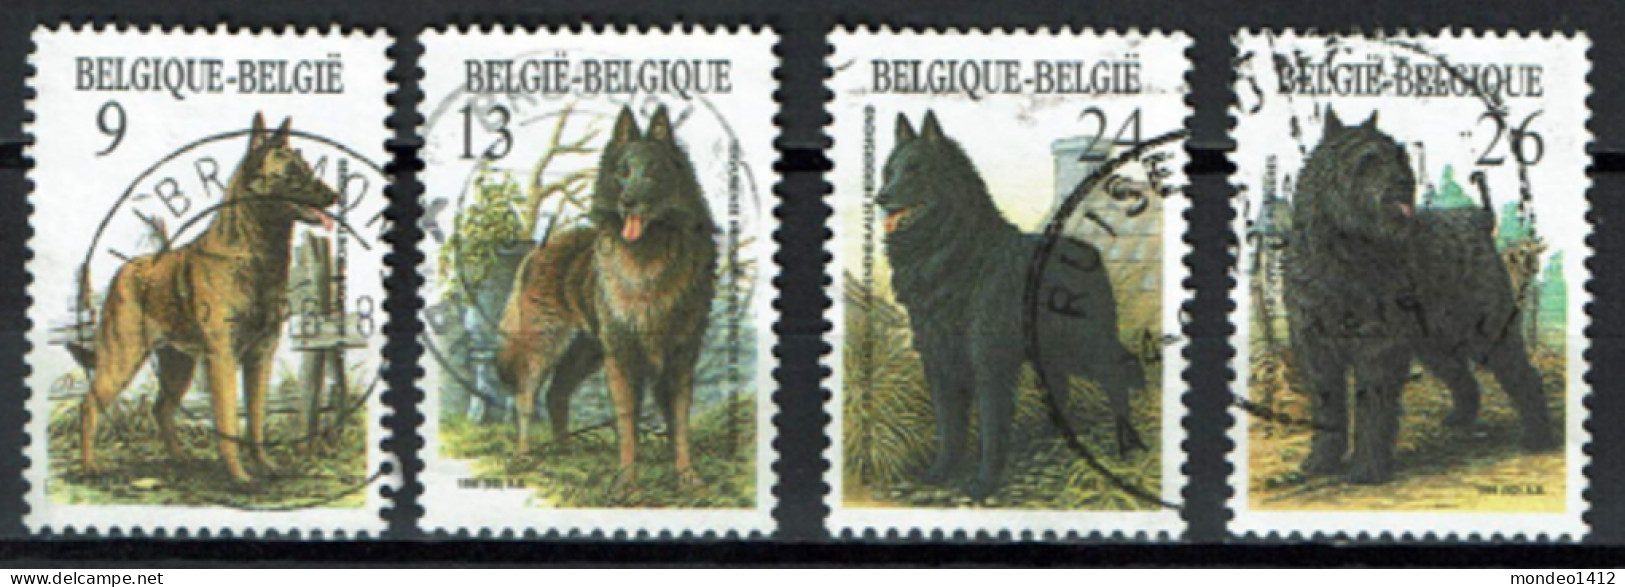 België 1986 OBP 2213/2216 - Y&T 2213/16 - Honden, Dogs, Chiens - Herdershond - Berger, Bouvier - Gebruikt